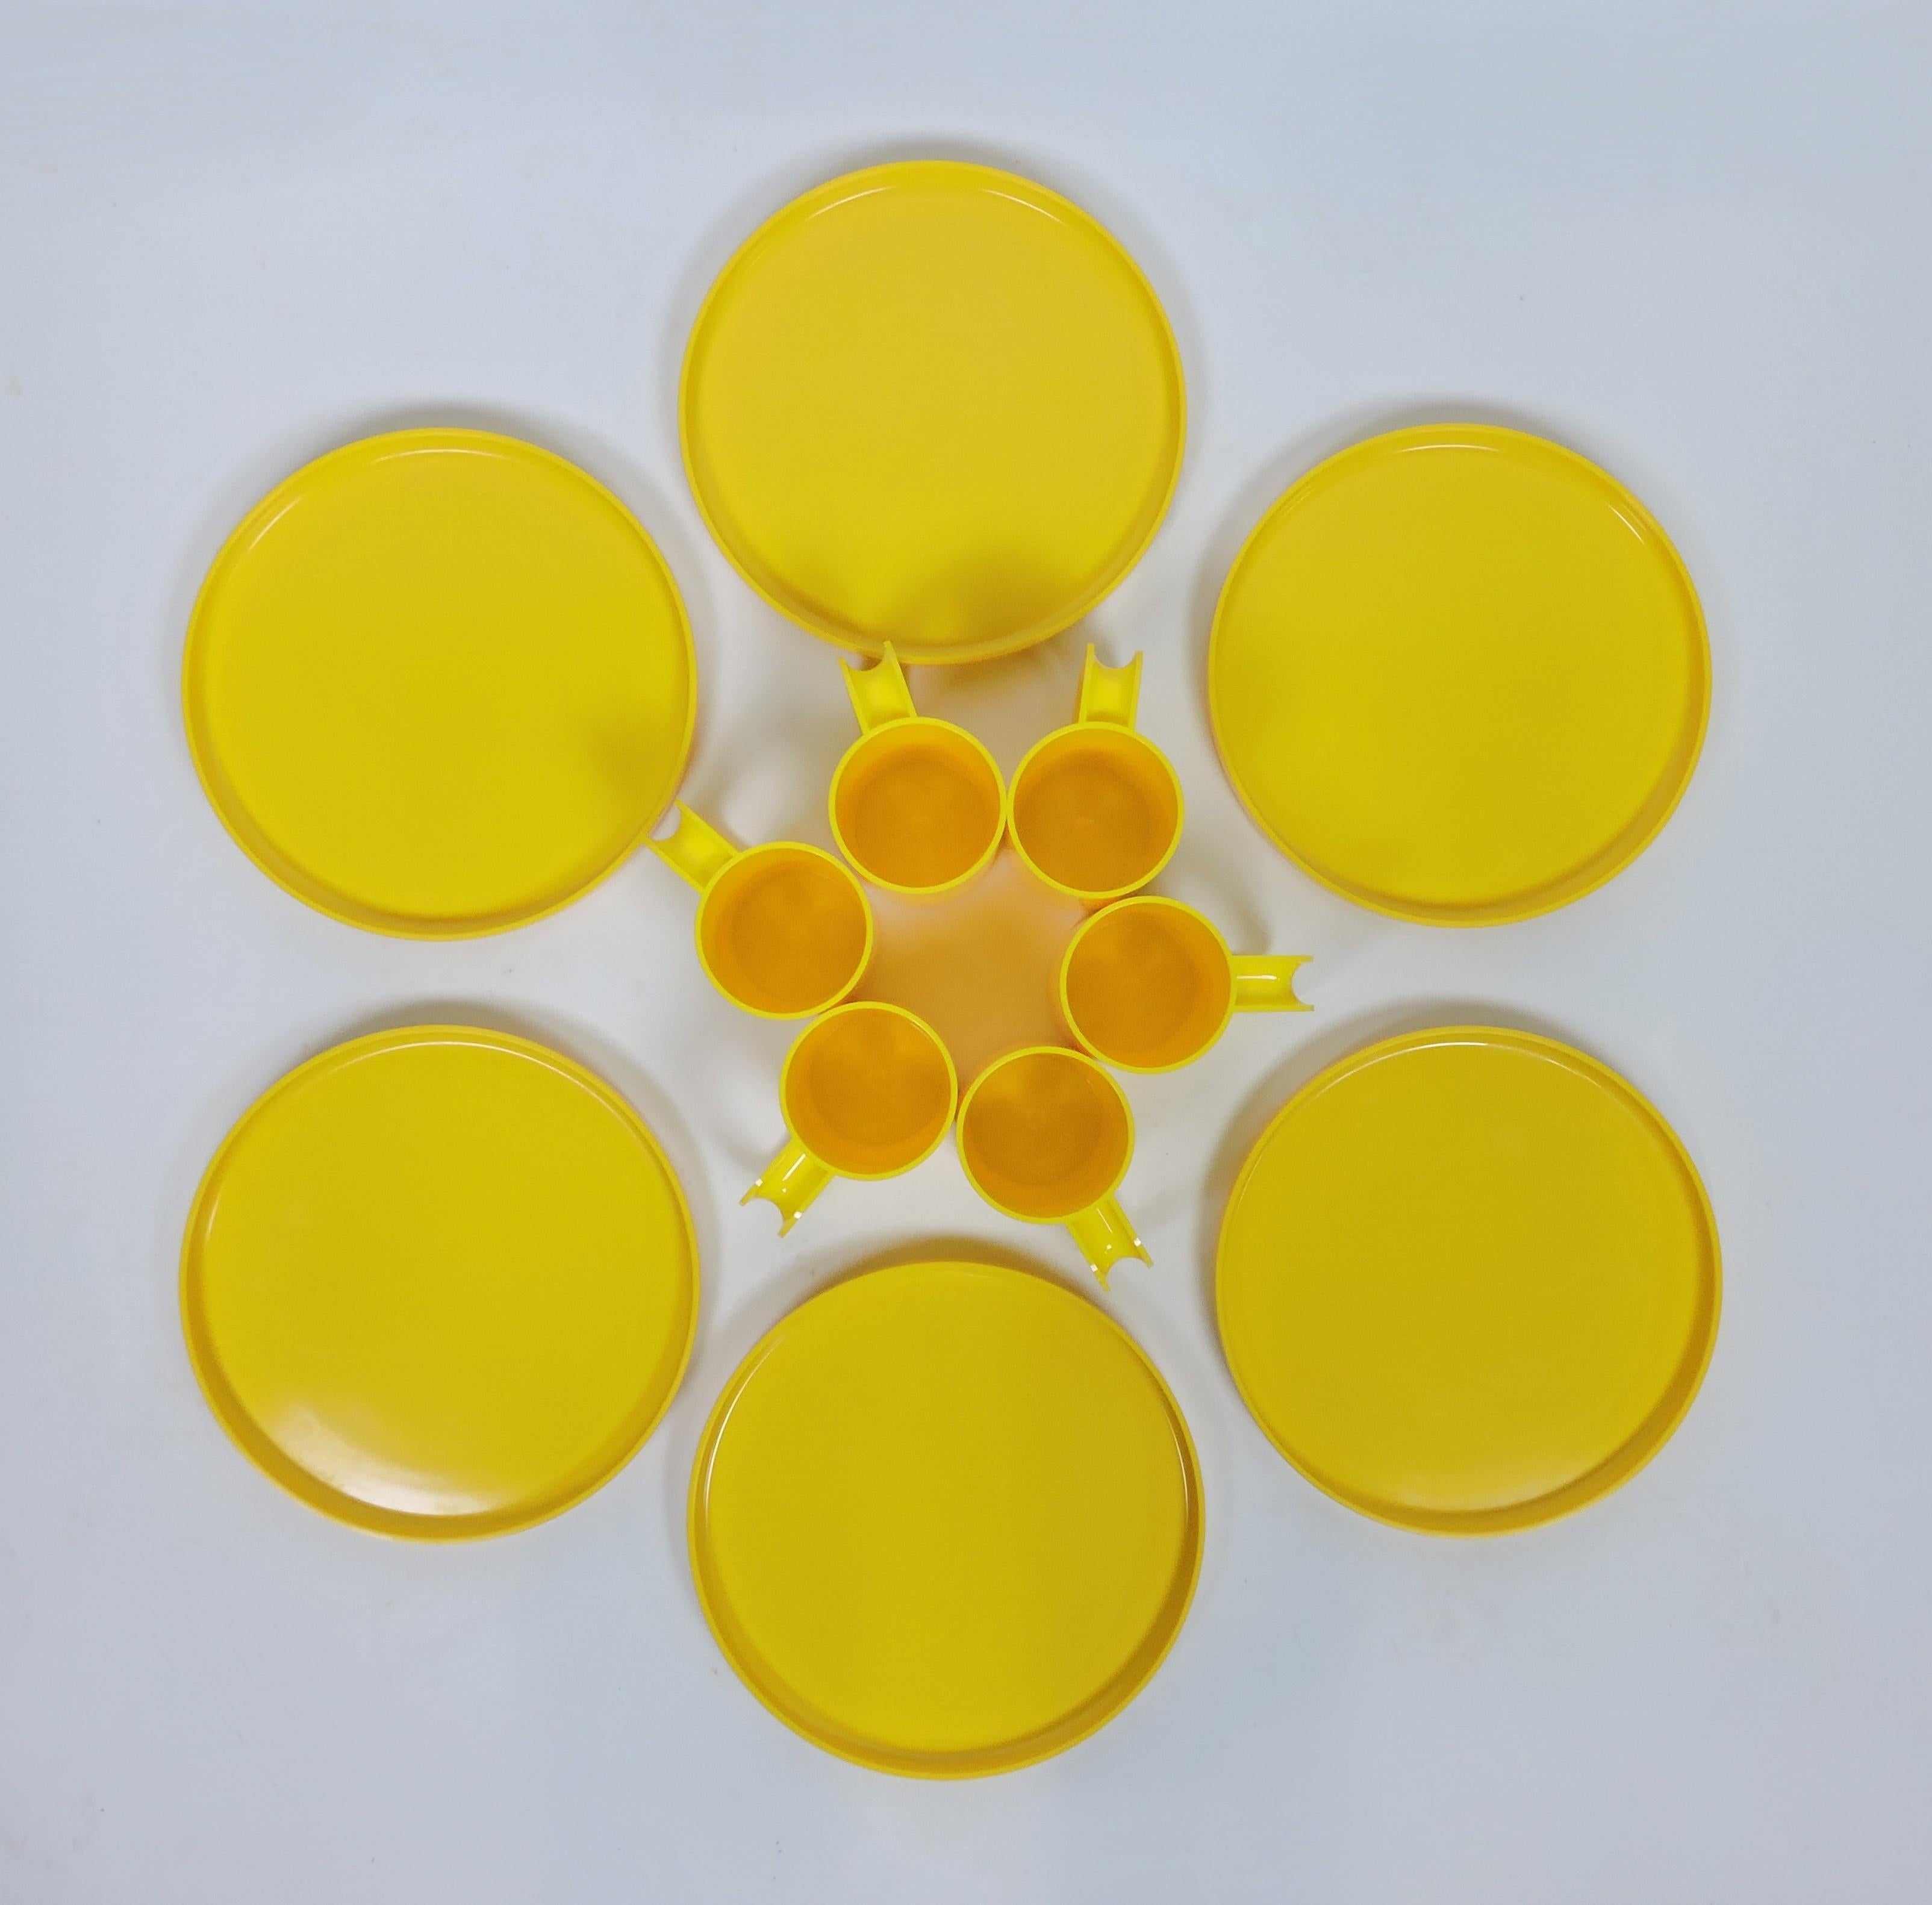 Diseño icónico de los años sesenta de Massimo and Lella Vignelli de platos y tazas apilables fabricados por Heller. Este set consta de 6 platos llanos y 6 tazas de color amarillo sol. Todas las tazas y un plato llevan estampada la etiqueta Heller.